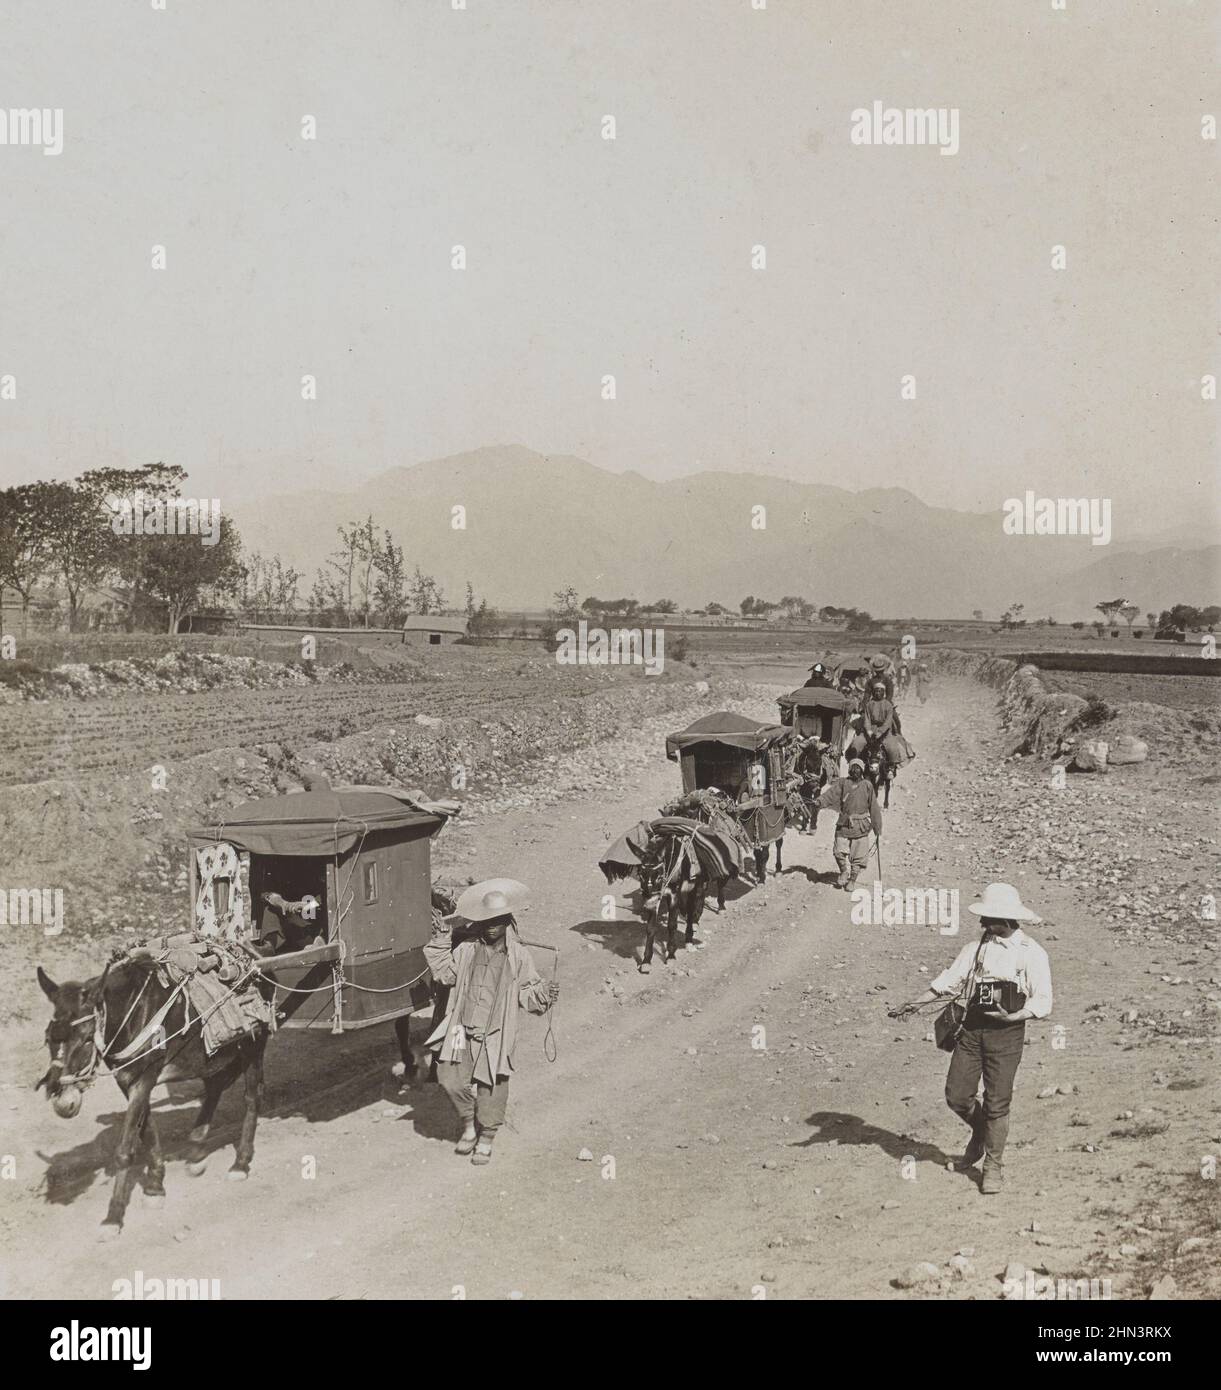 Foto d'epoca di uomini cinesi in abito tradizionale e cartoni d'asino sulla strada per le tombe della dinastia Ming. Cina settentrionale. Novembre 1902 Foto Stock